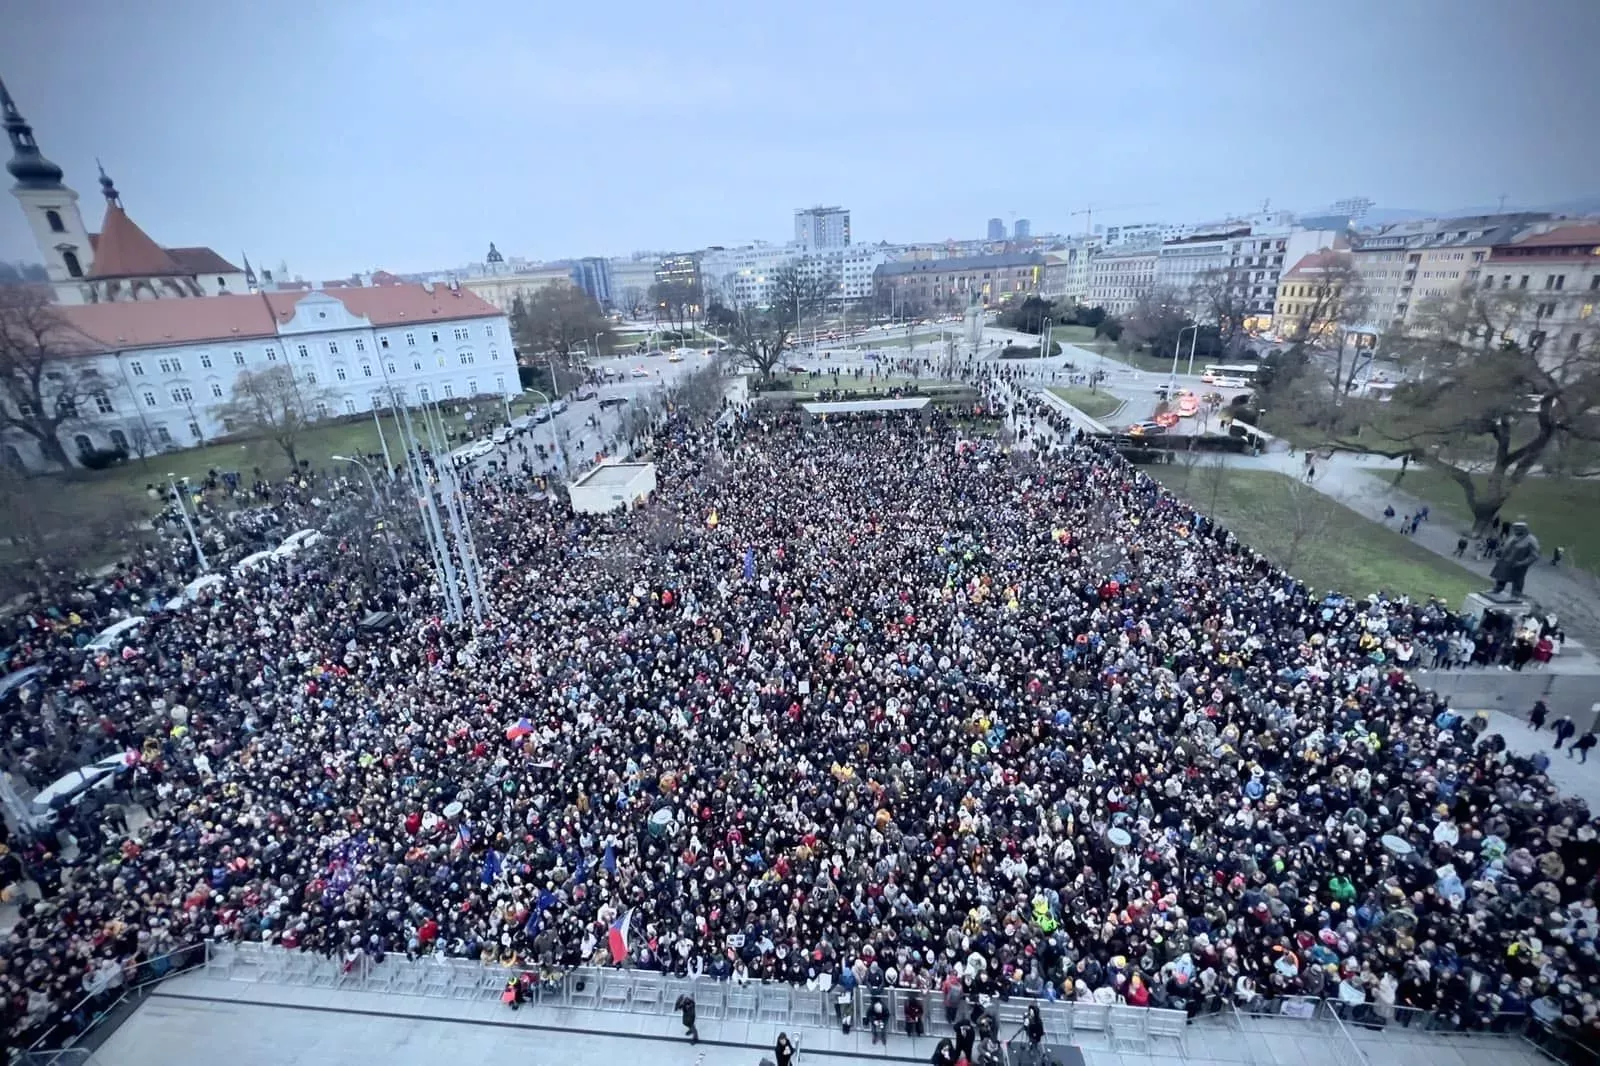 Na mítink s Pavlem přišlo v Brně 8000 lidí,dopravu v okolí musela policie omezit